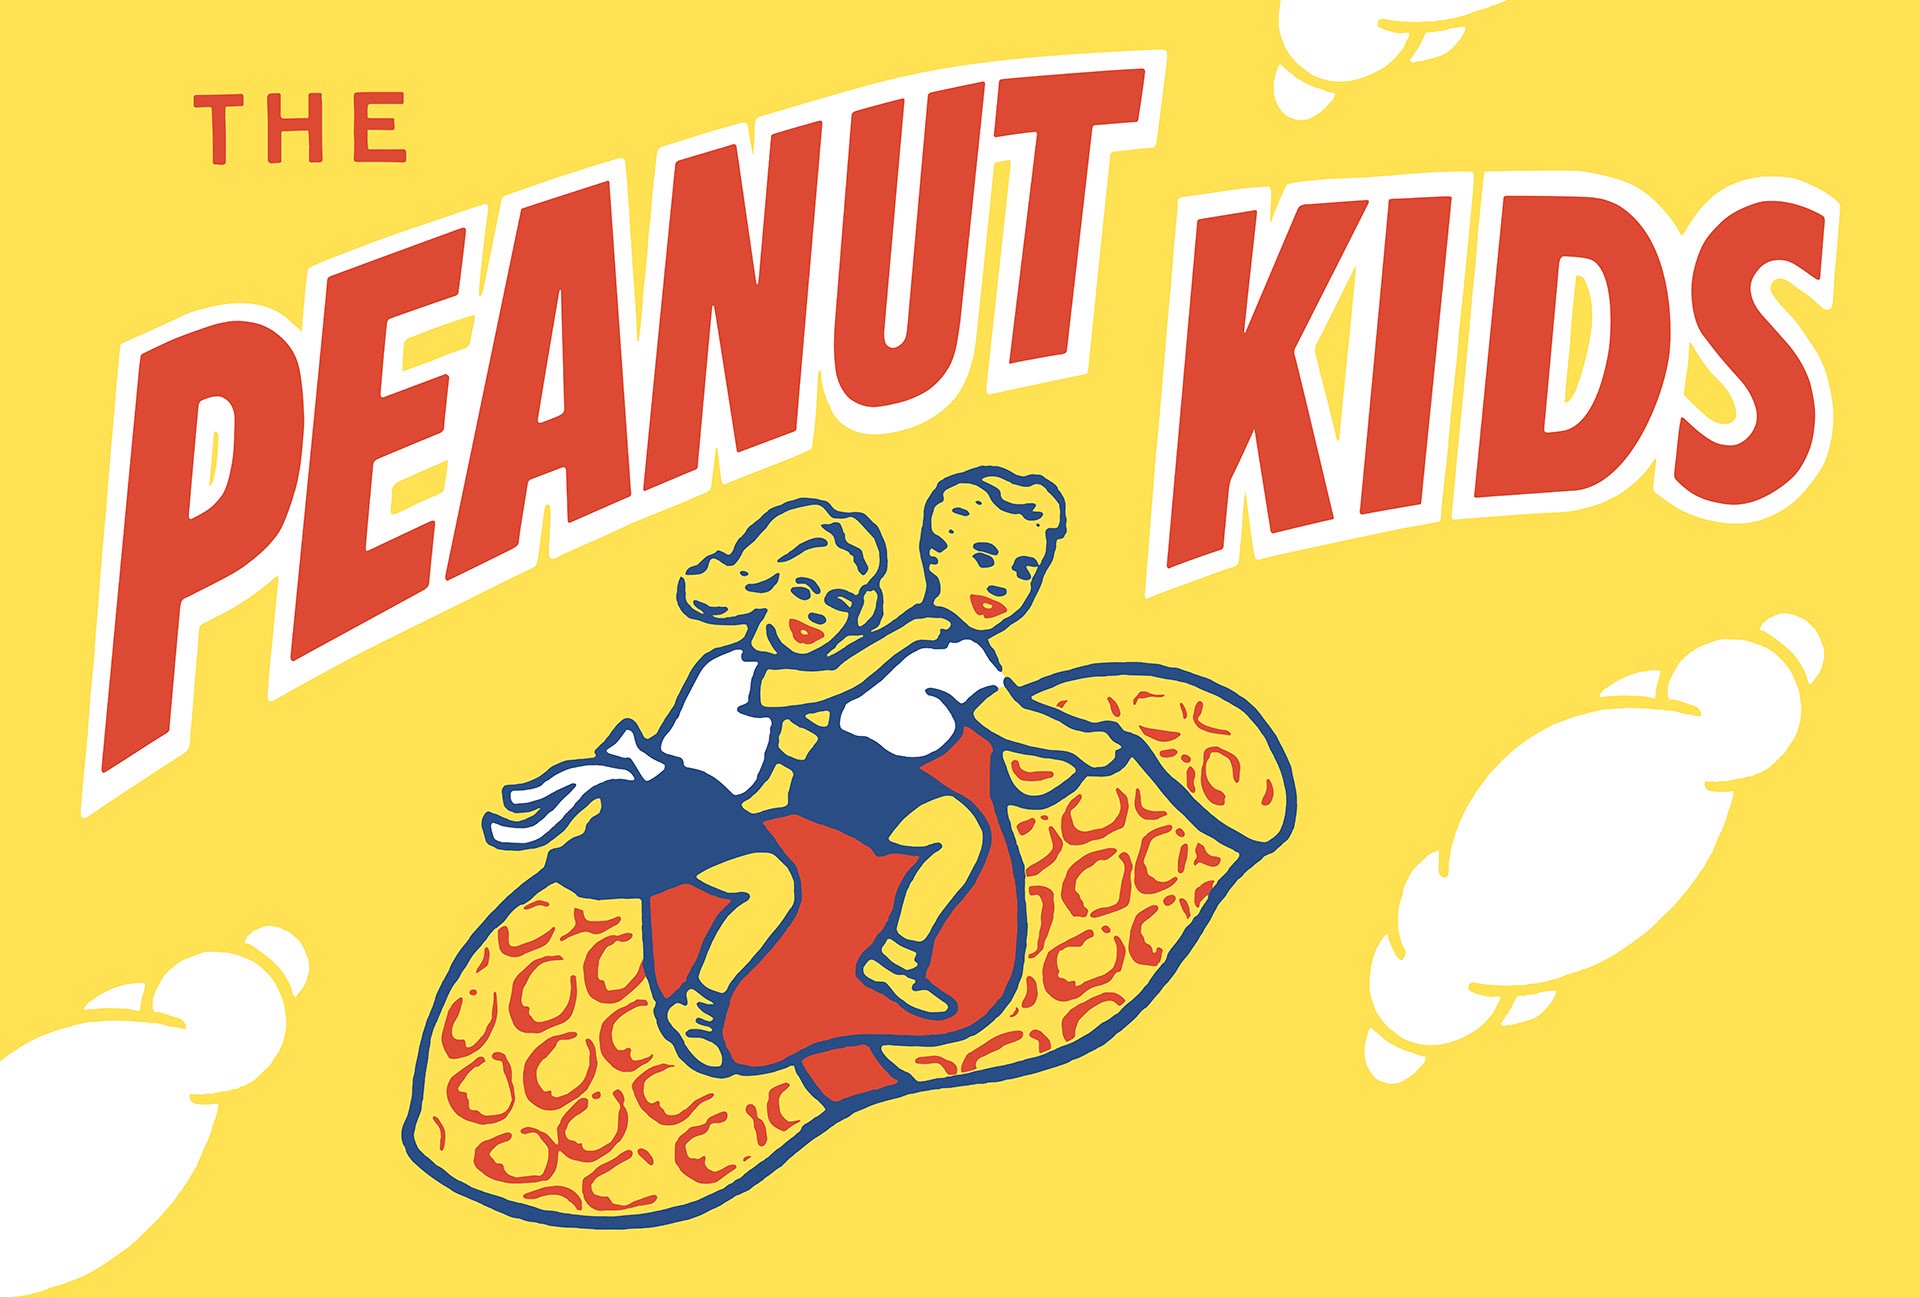 Peanut Kids by Mark Hosford